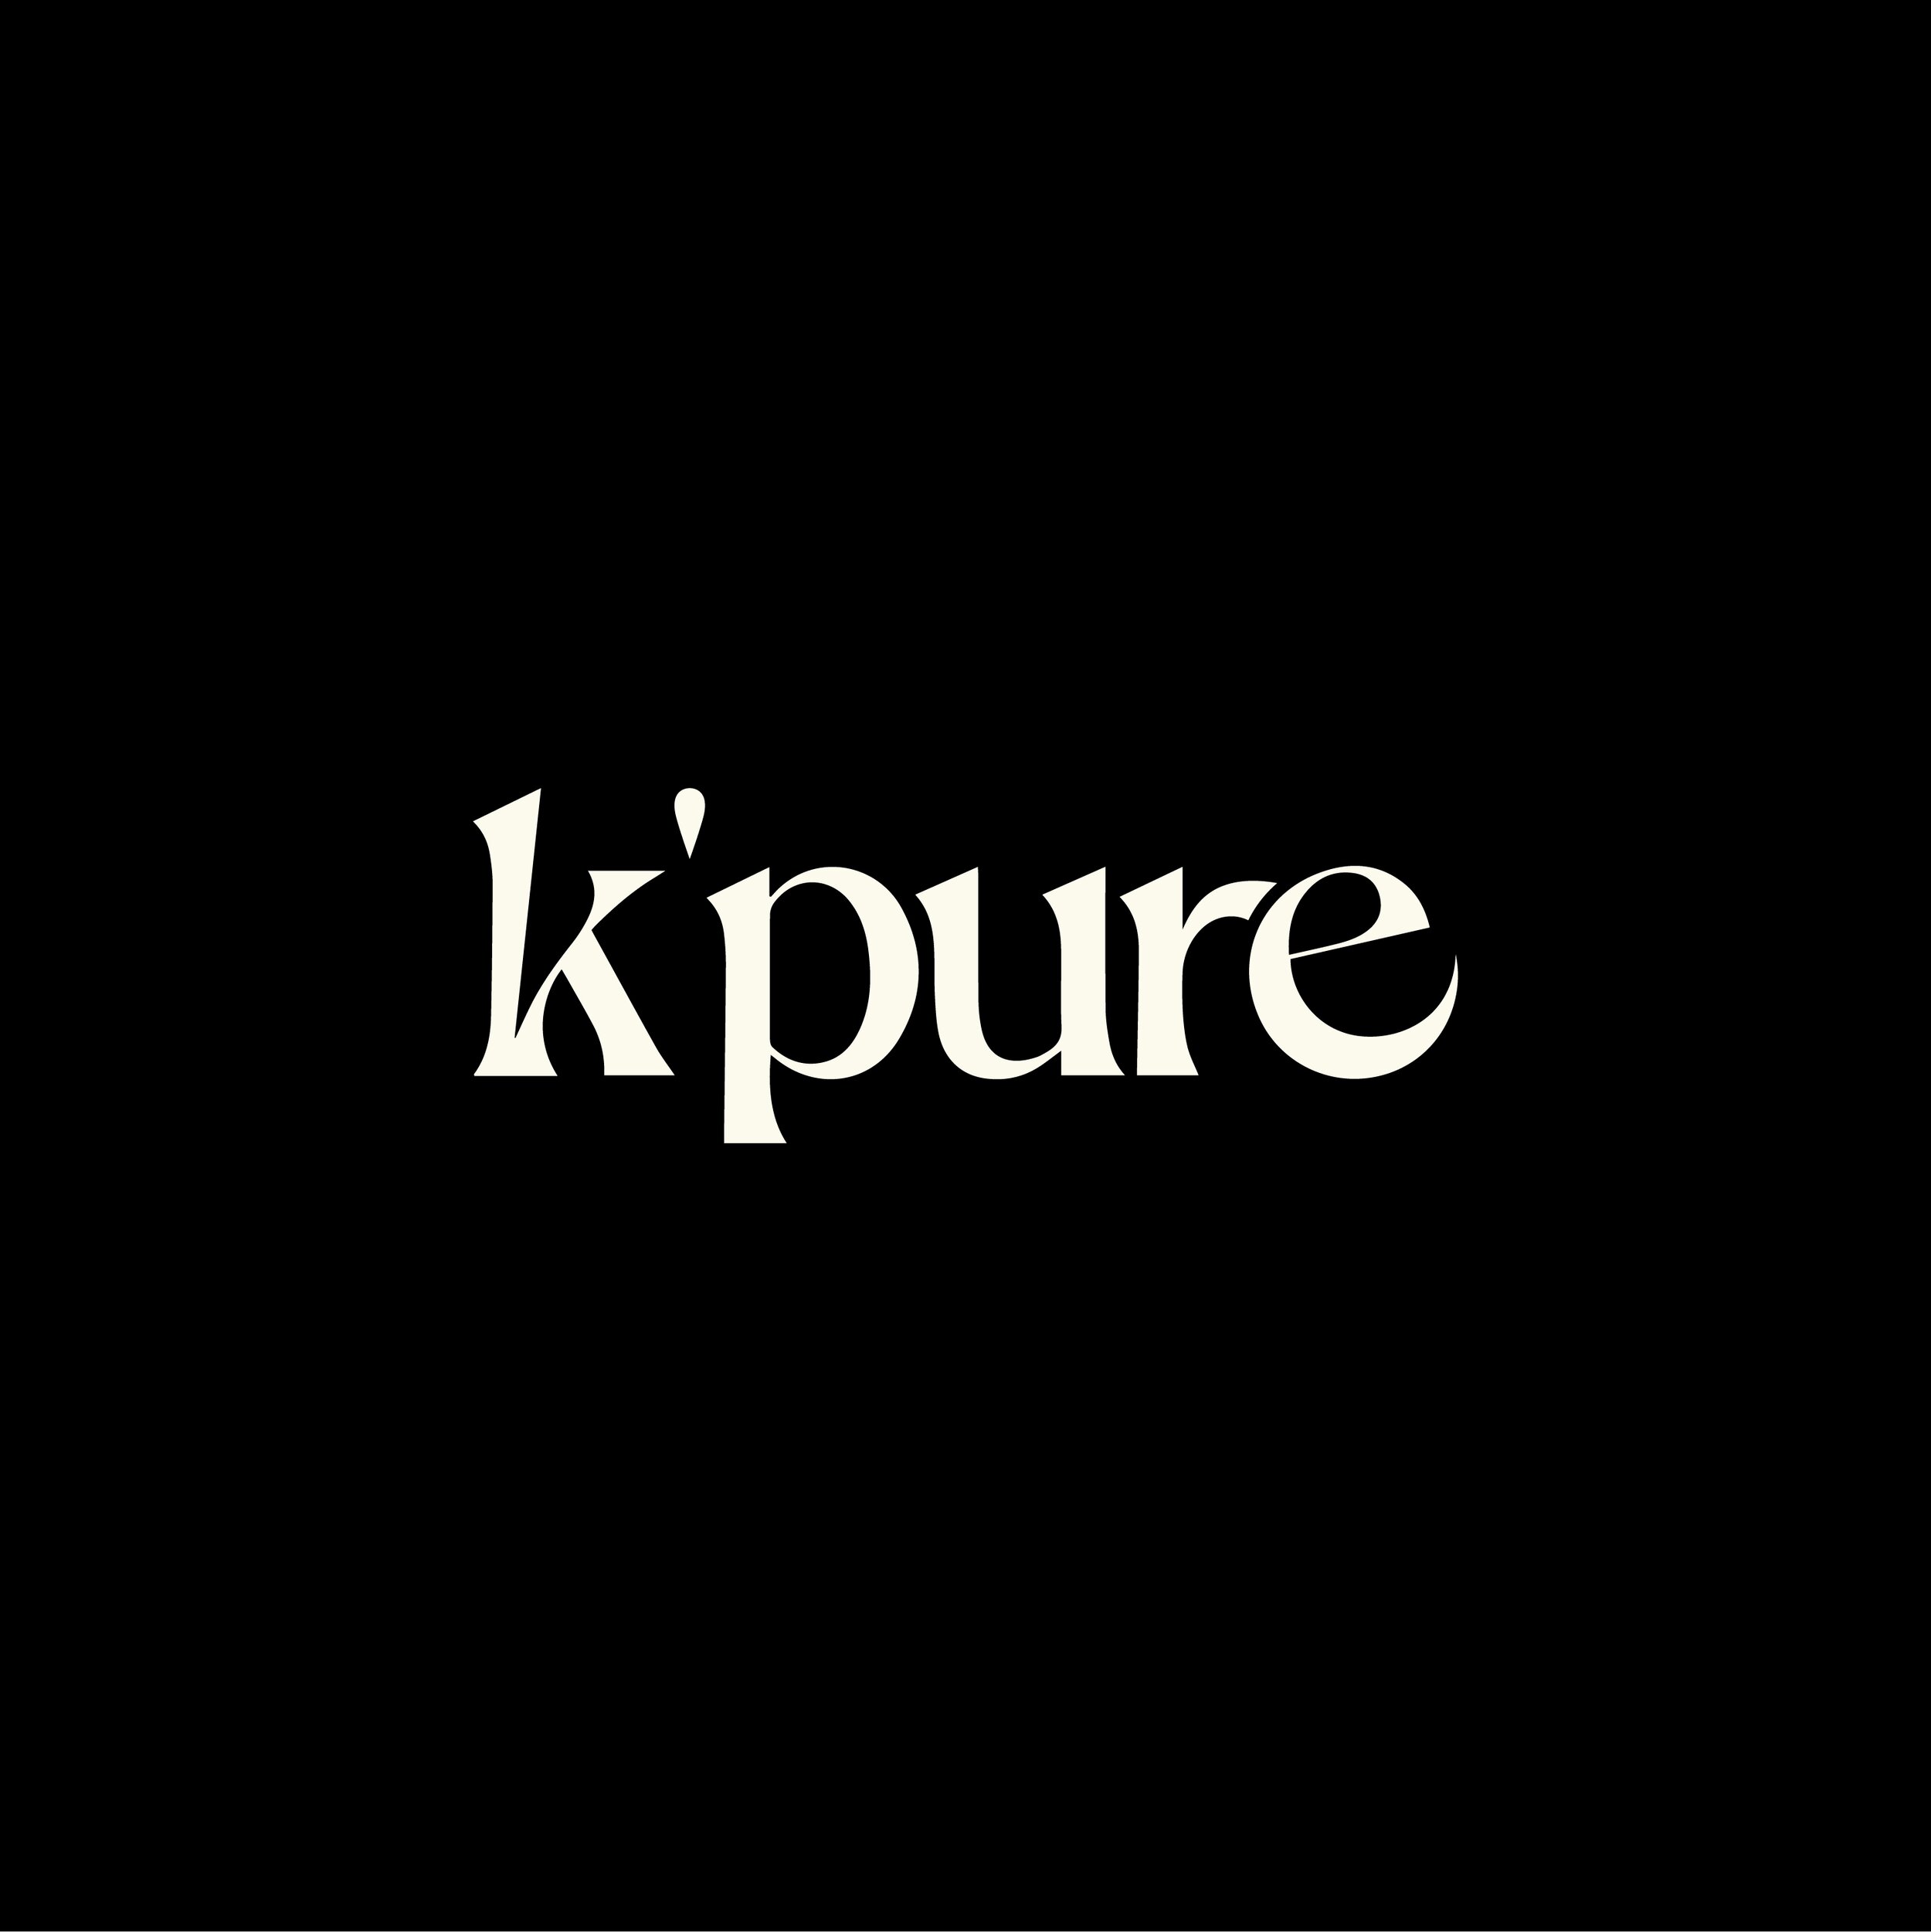 K'pure_Primary Logo (Black-Linen).jpg